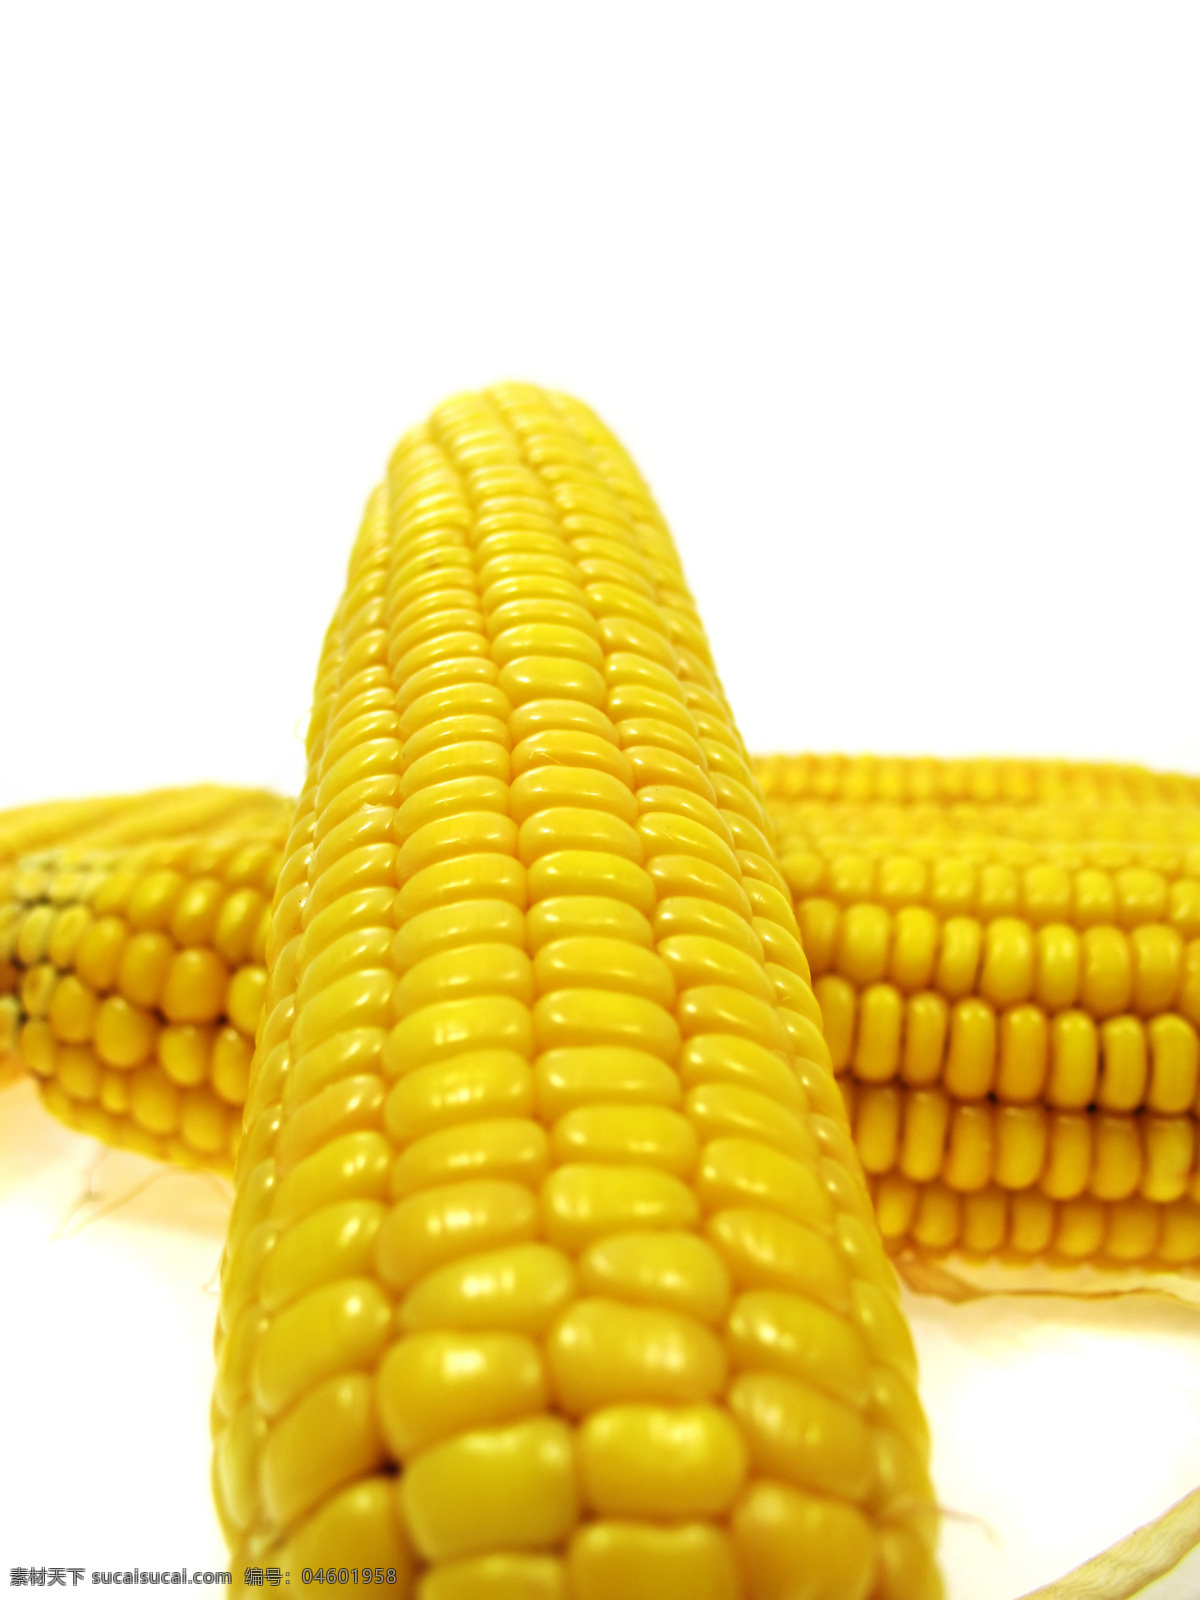 高清 玉米 高清素材 设计素材 高清玉米 金色玉米 蔬菜类素材 生物世界